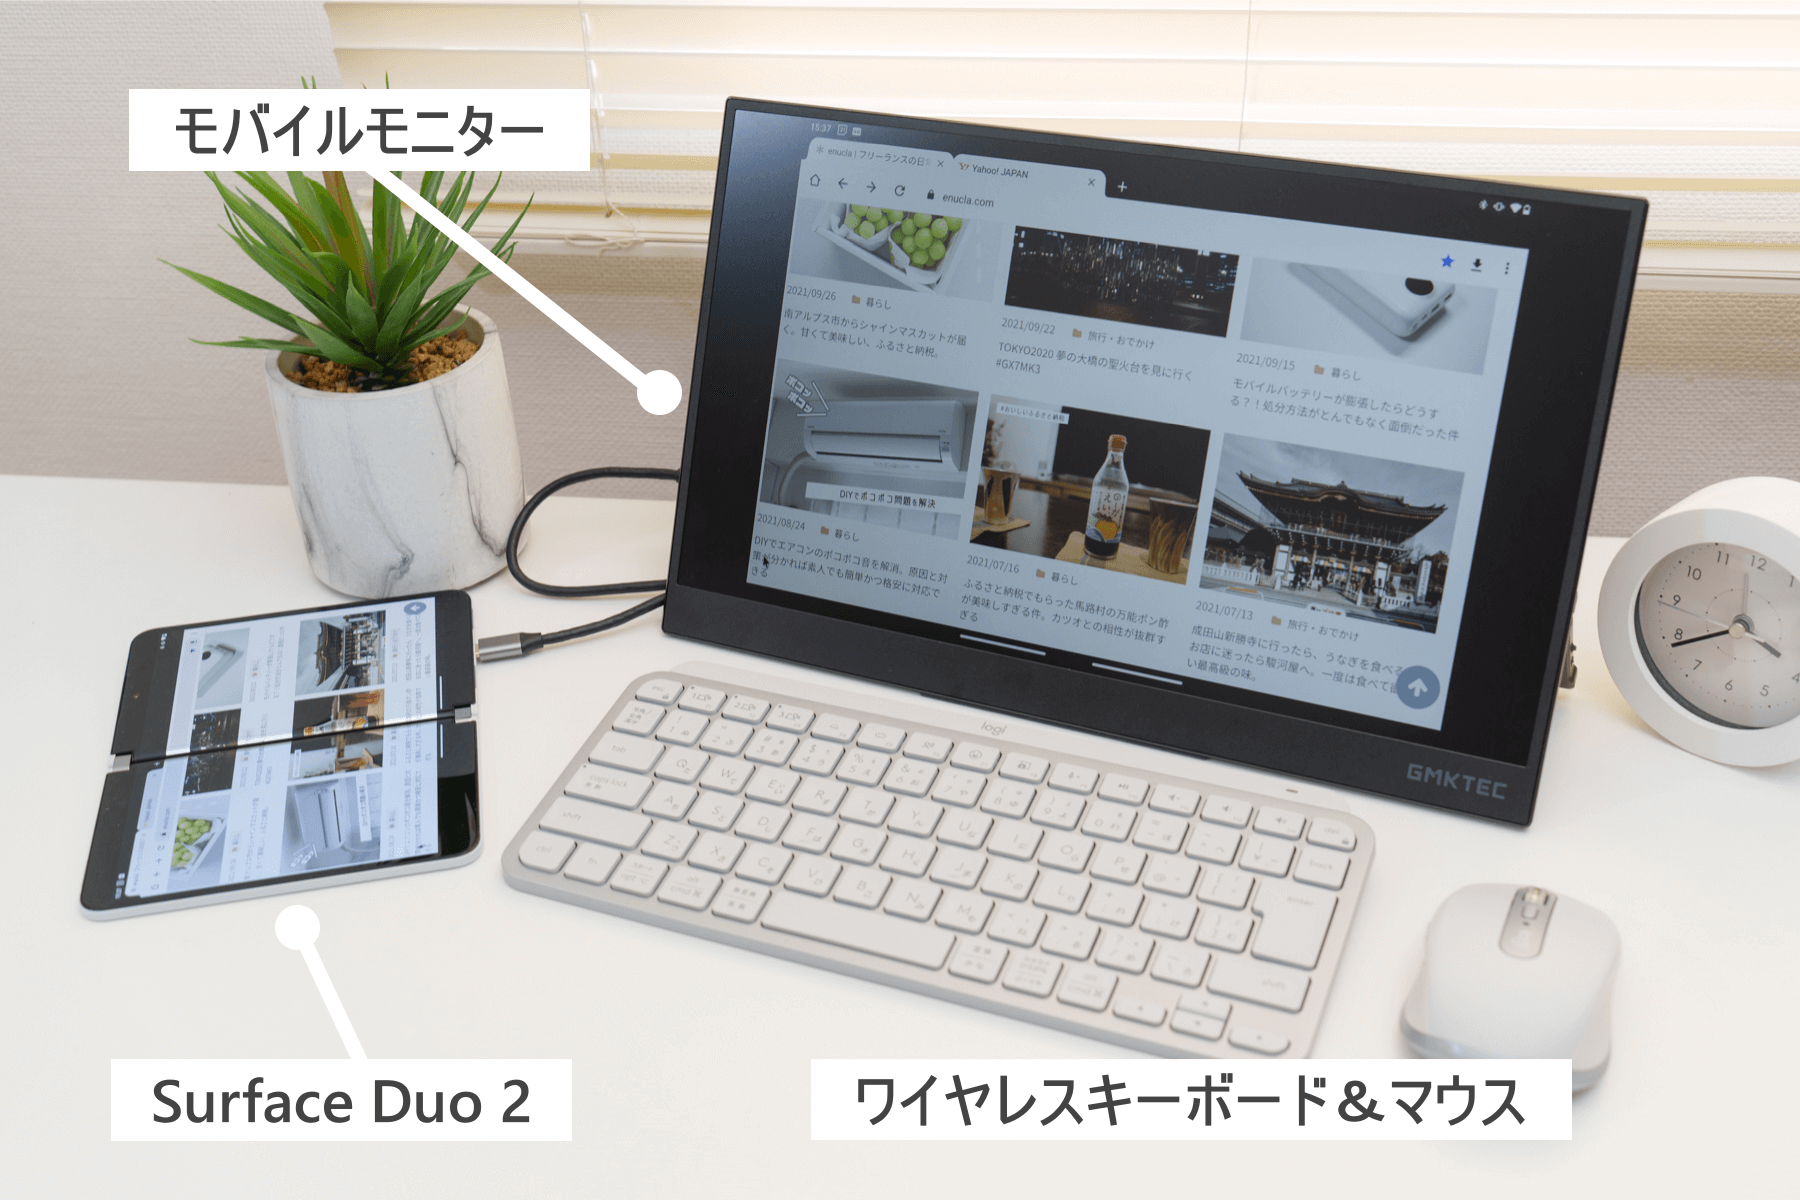 Surface Duo 2 にディスプレイとキーボード、マウスを接続